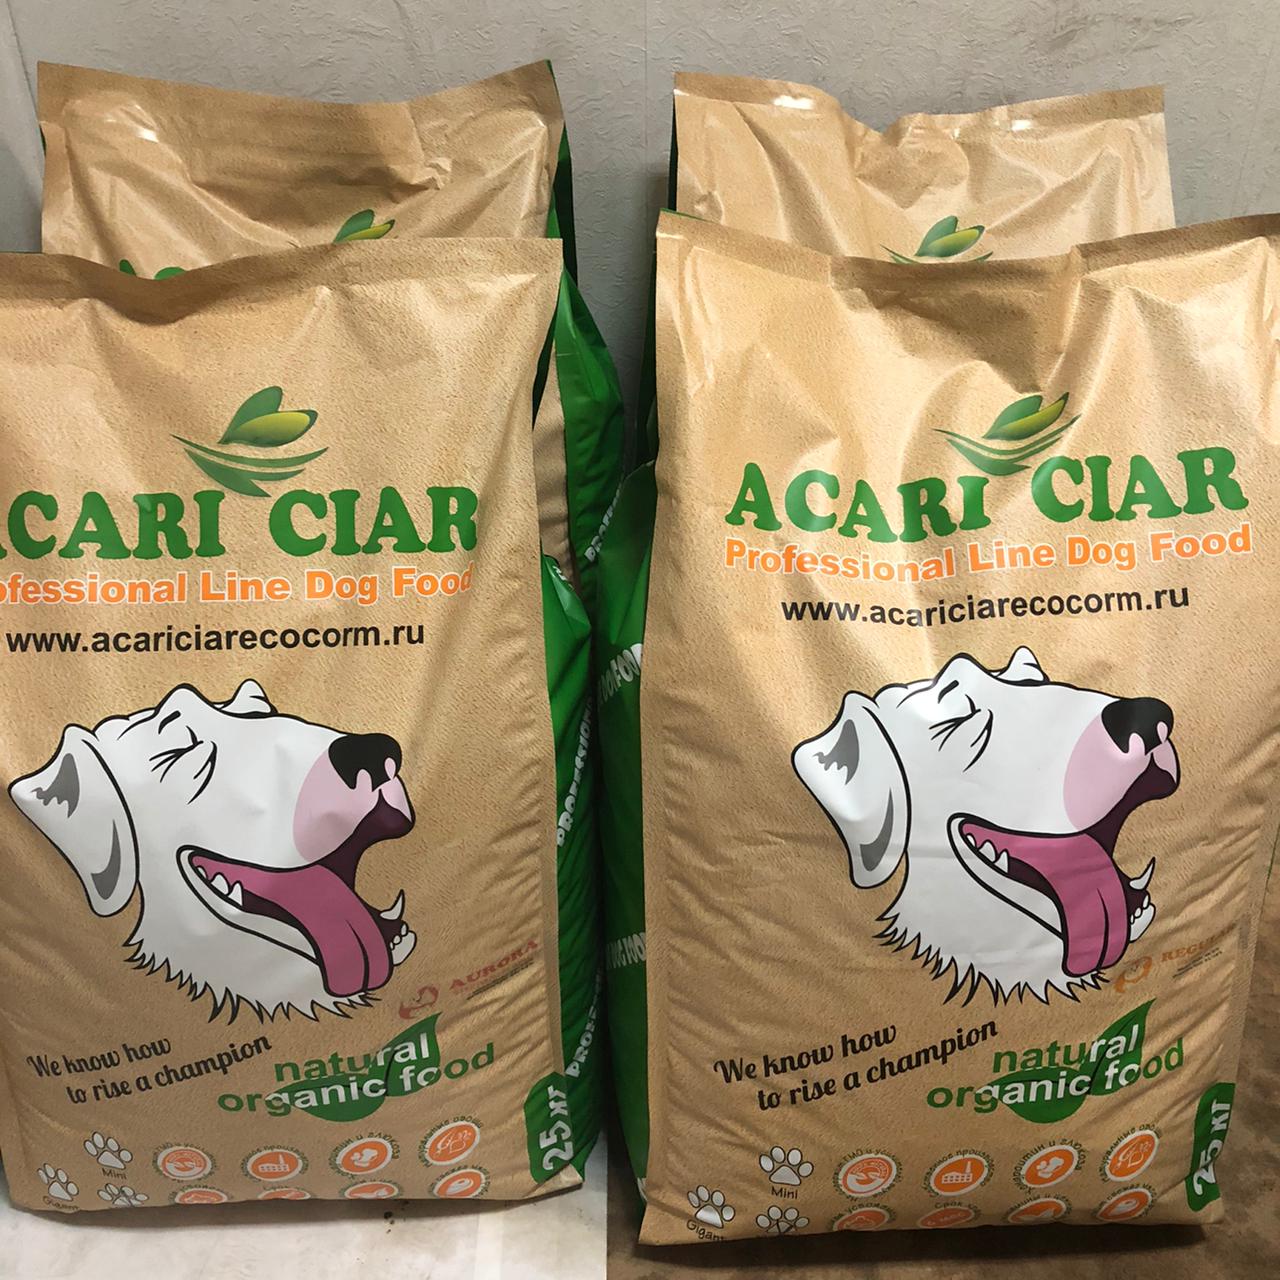 Купить корм acari. Корм Акари Киар для собак. Acari Ciar корм для собак гипоаллергенный. Корм для собак Акари Киар для щенков. Корм Акари Киар 25 кг.